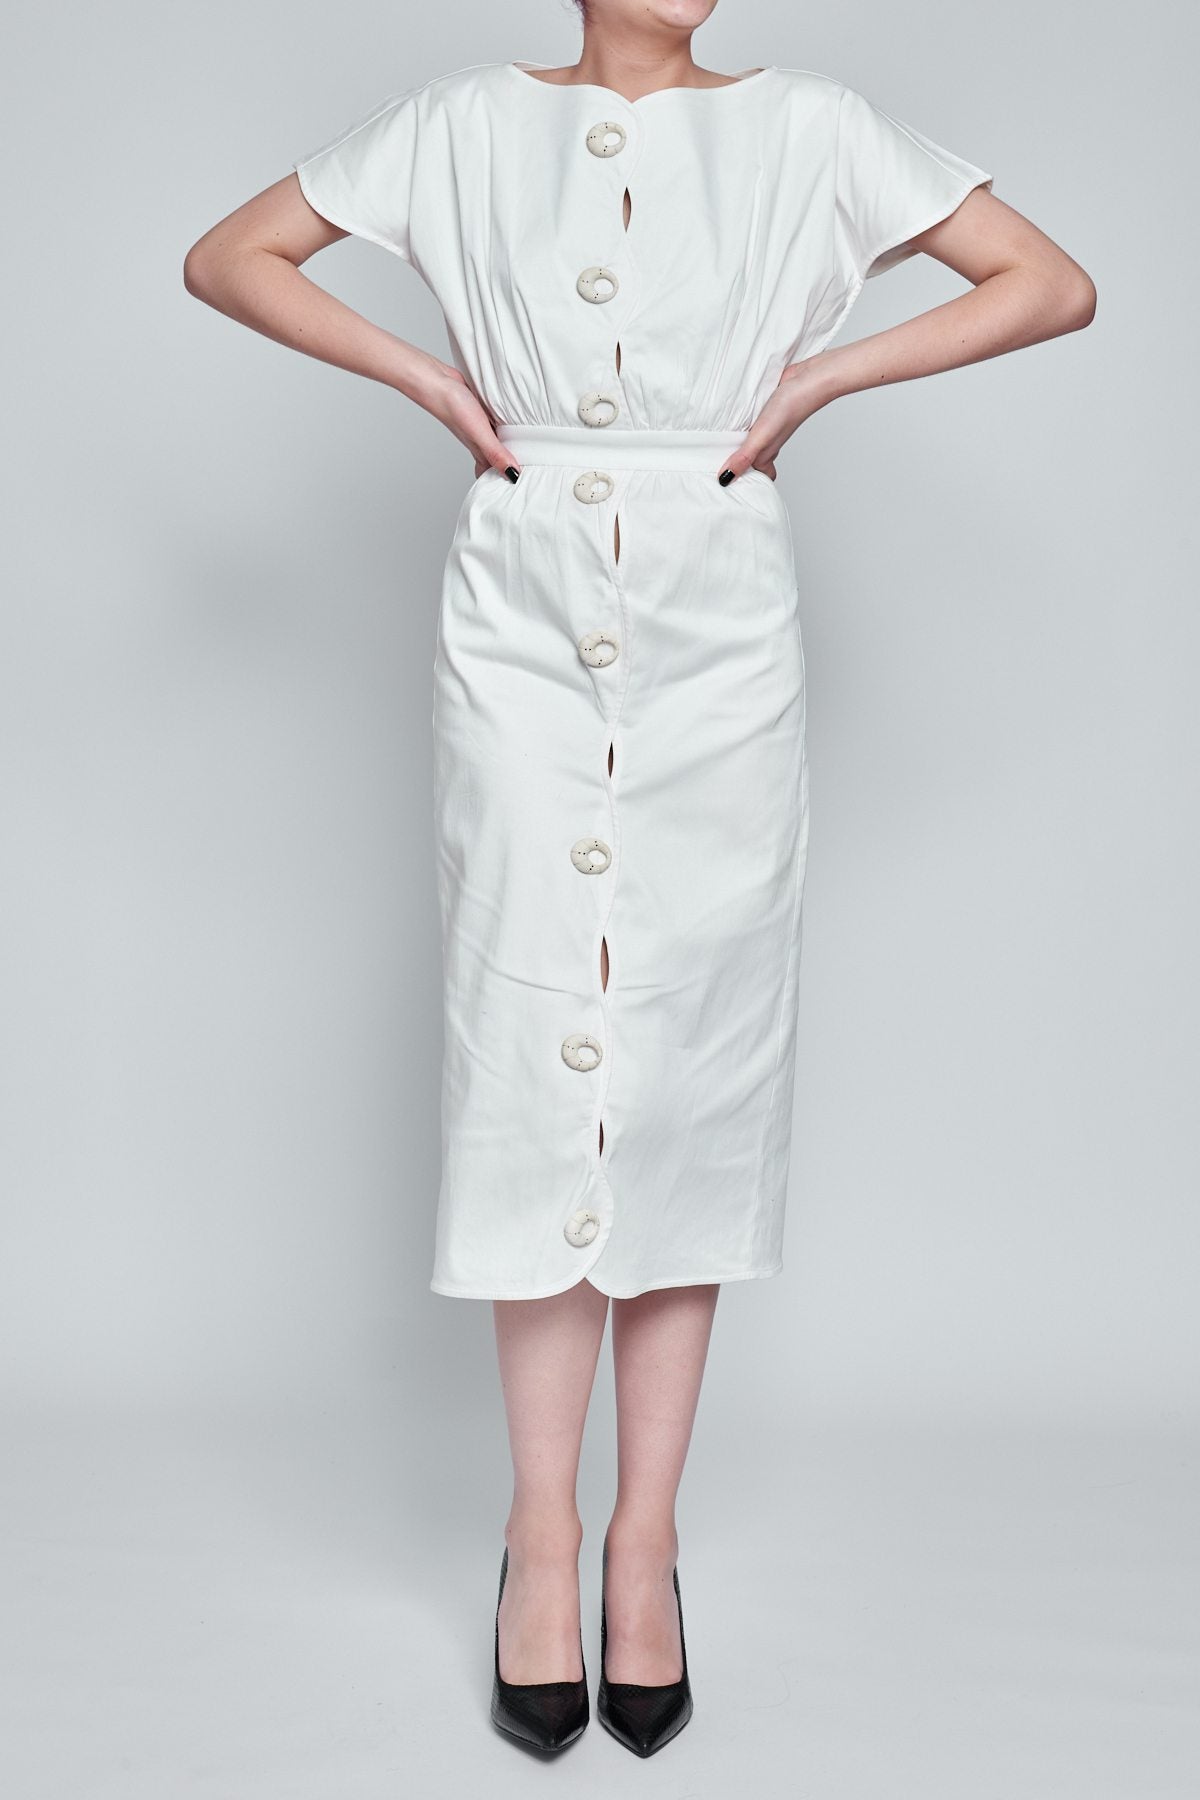 Short Sleeve Off White Midi Dress - Shantall Lacayo